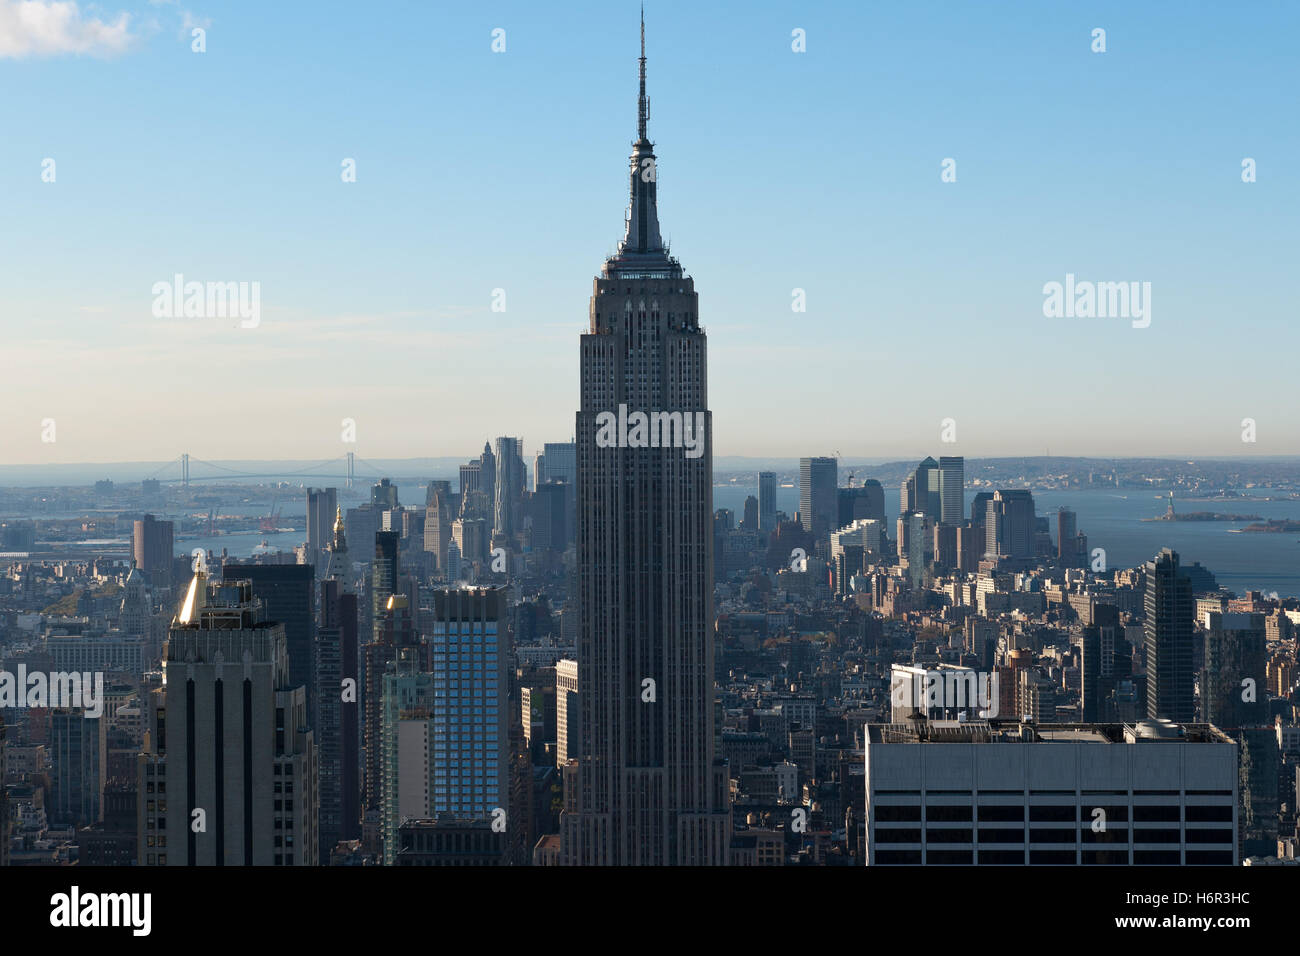 Estados Unidos Nueva York Manhattan architektur Empire State building amerika stadt wolkenkratzer Foto de stock